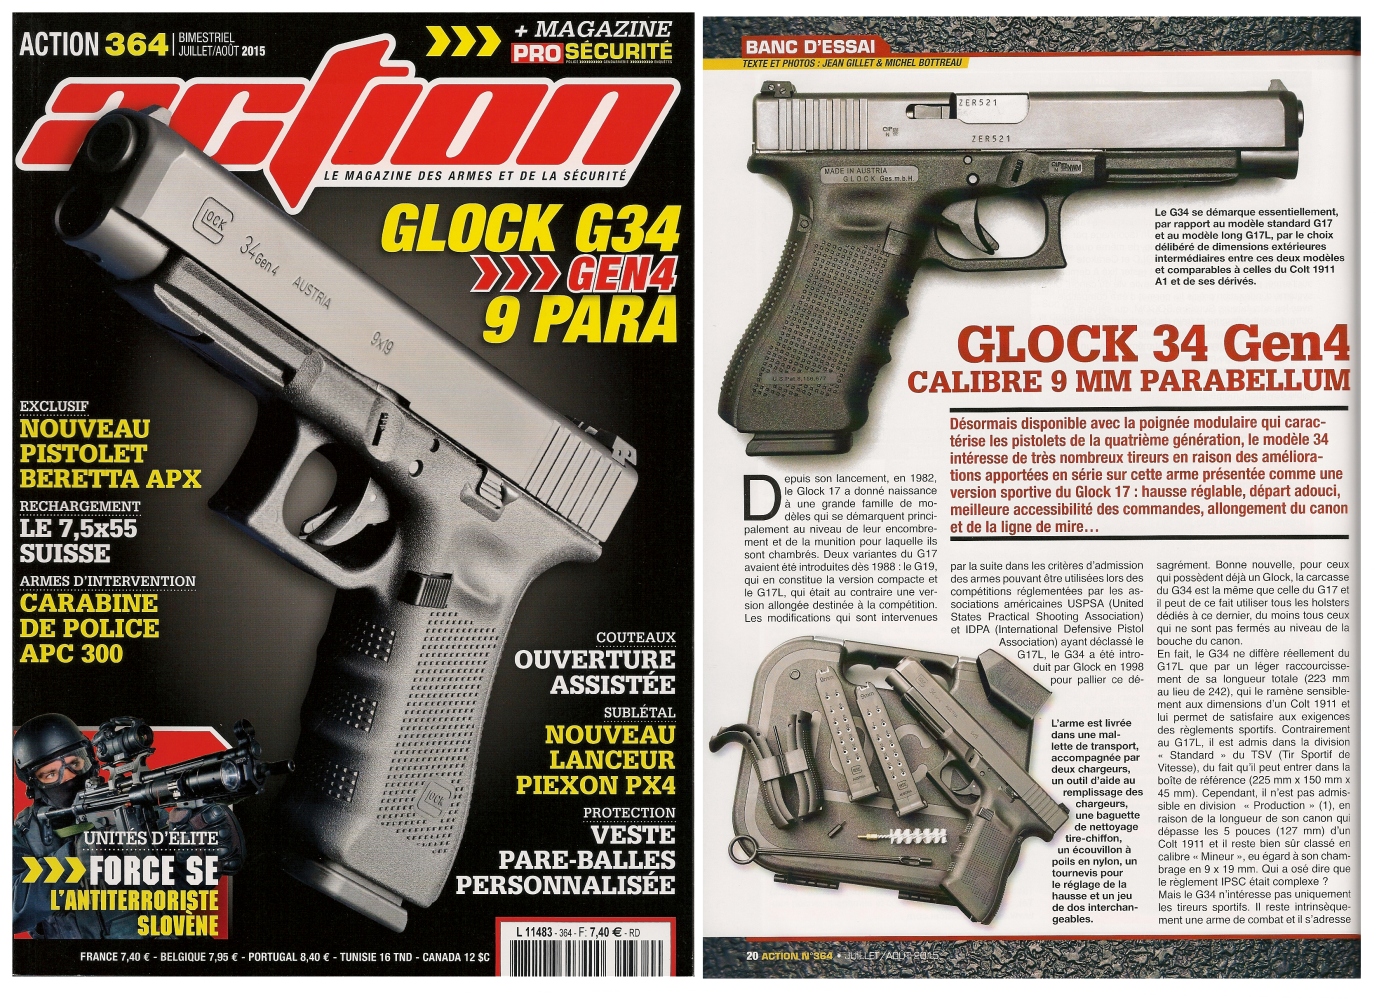 Le banc d'essai du pistolet Glock 34 Gen4 a été publié sur 6 pages dans le magazine Action n° 364 (juillet-août 2015). 